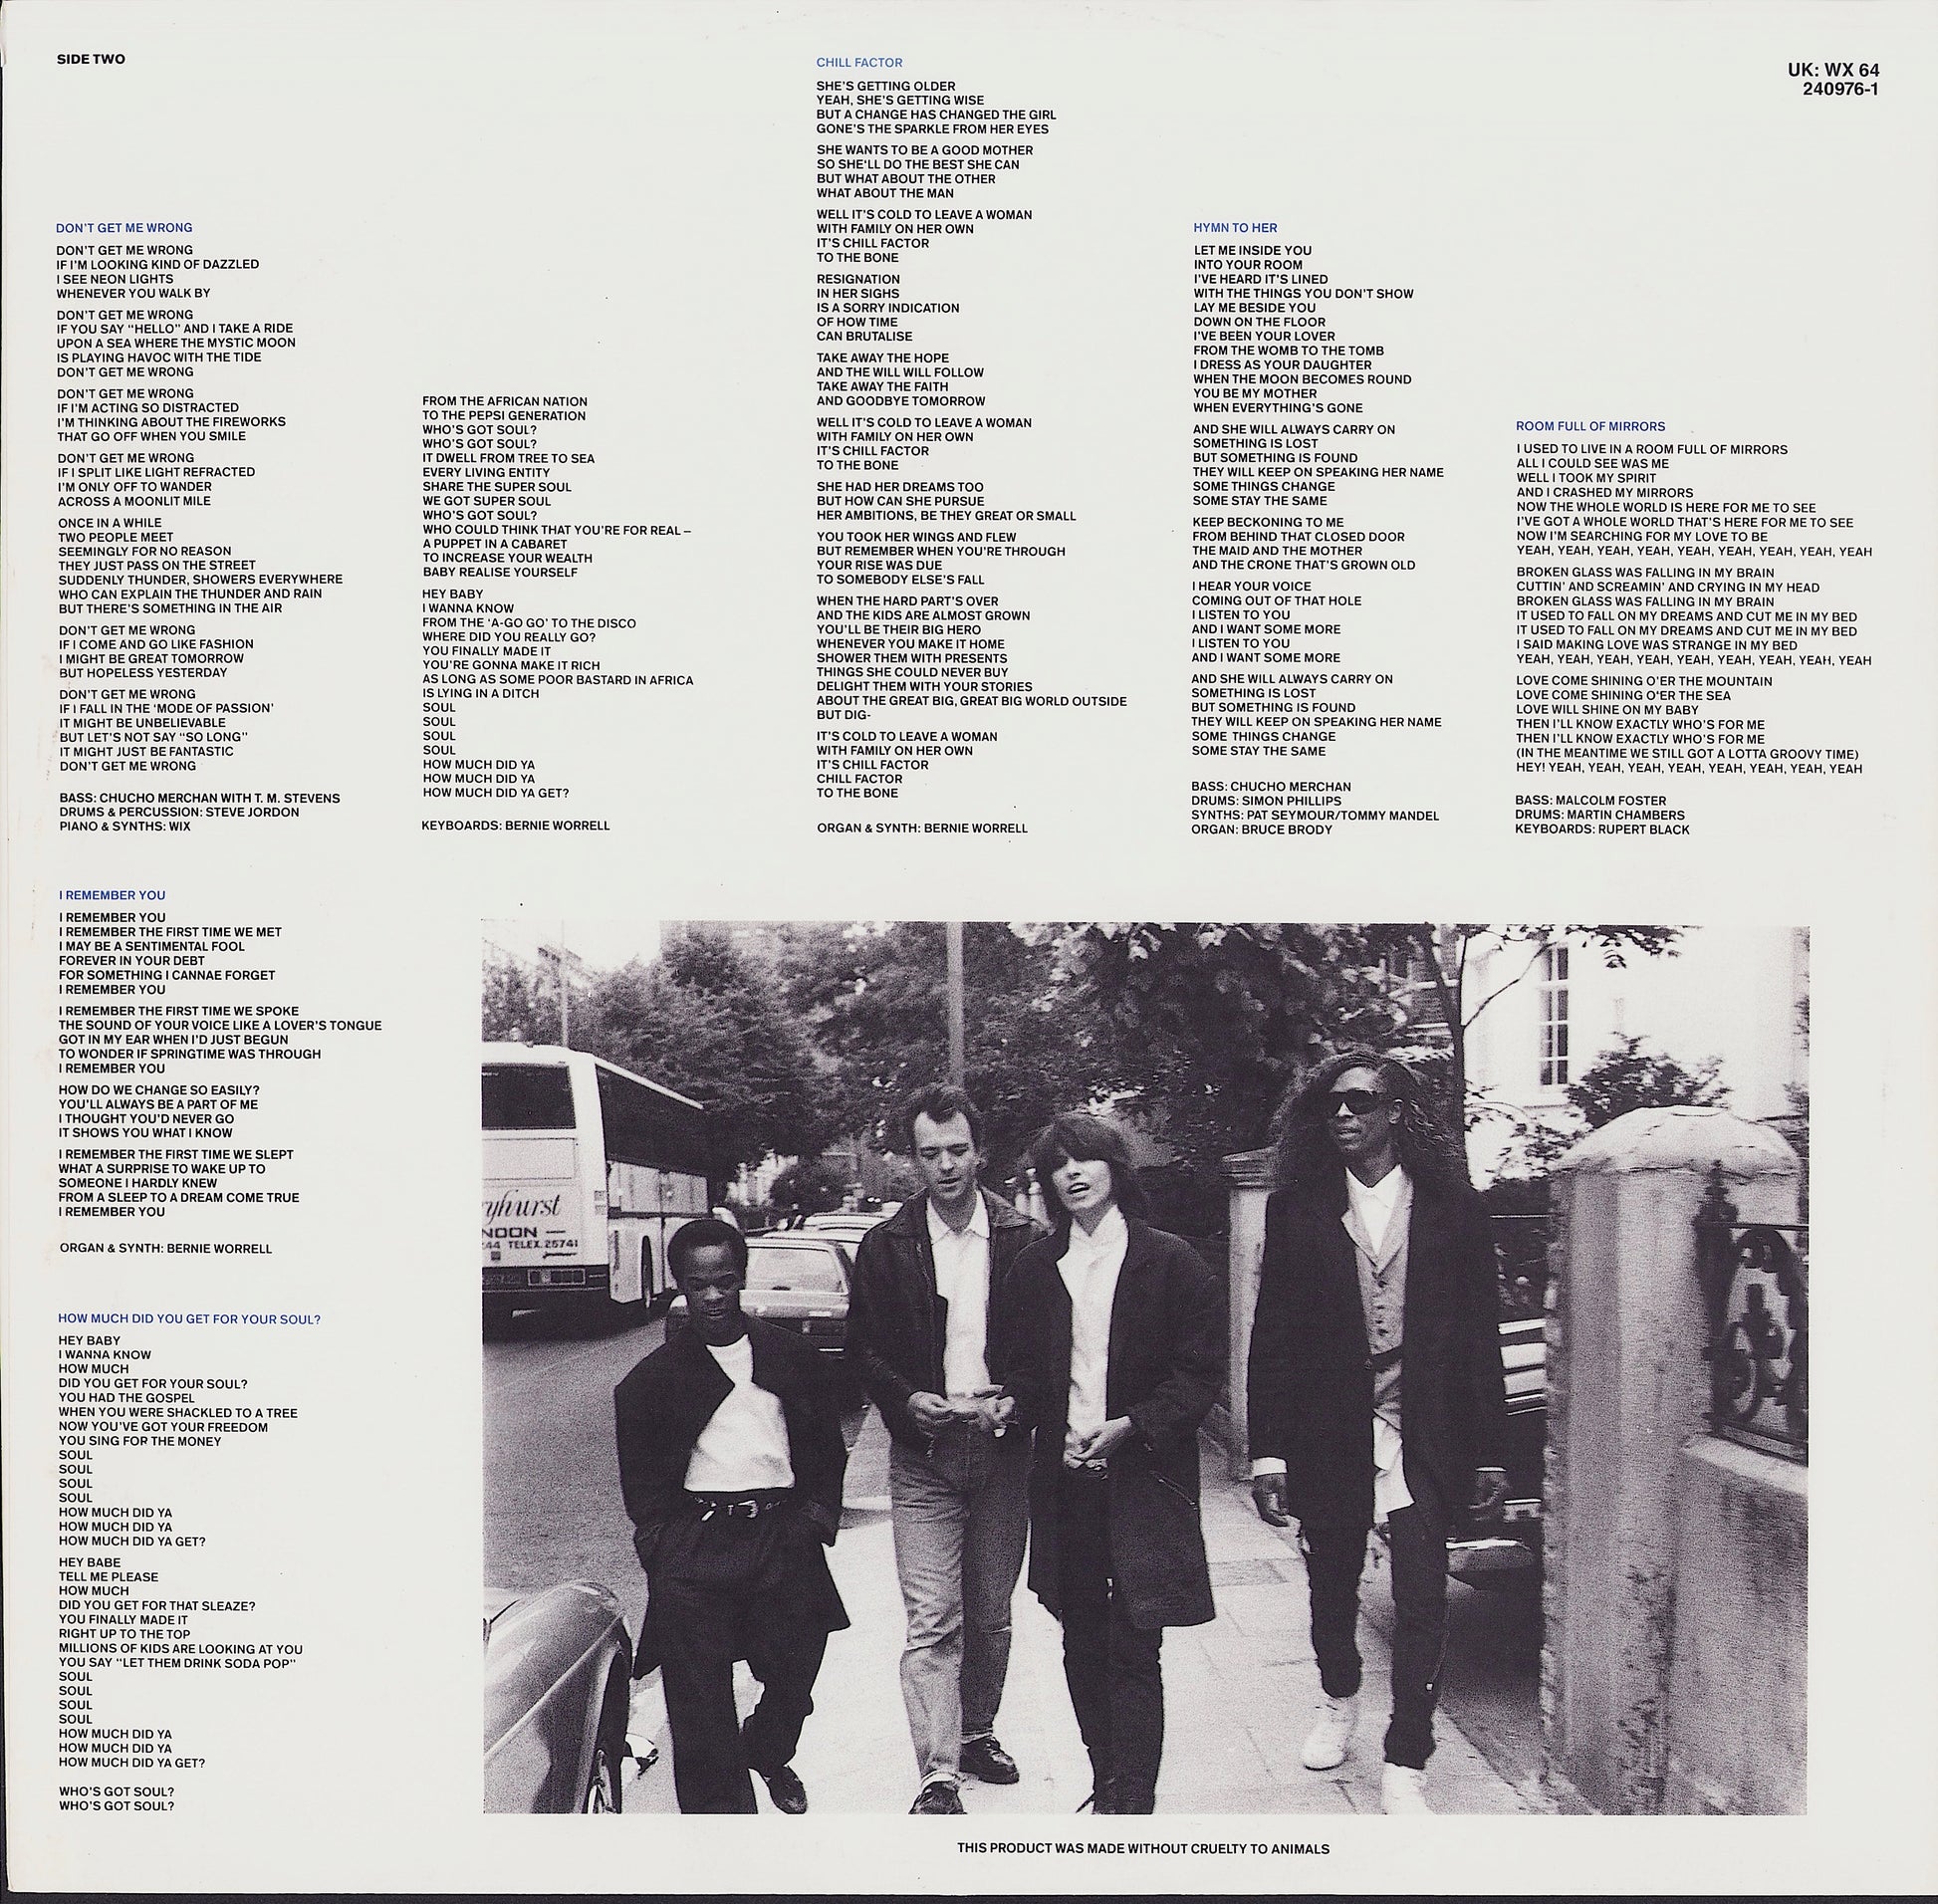 The Pretenders - Get Close Vinyl LP EU